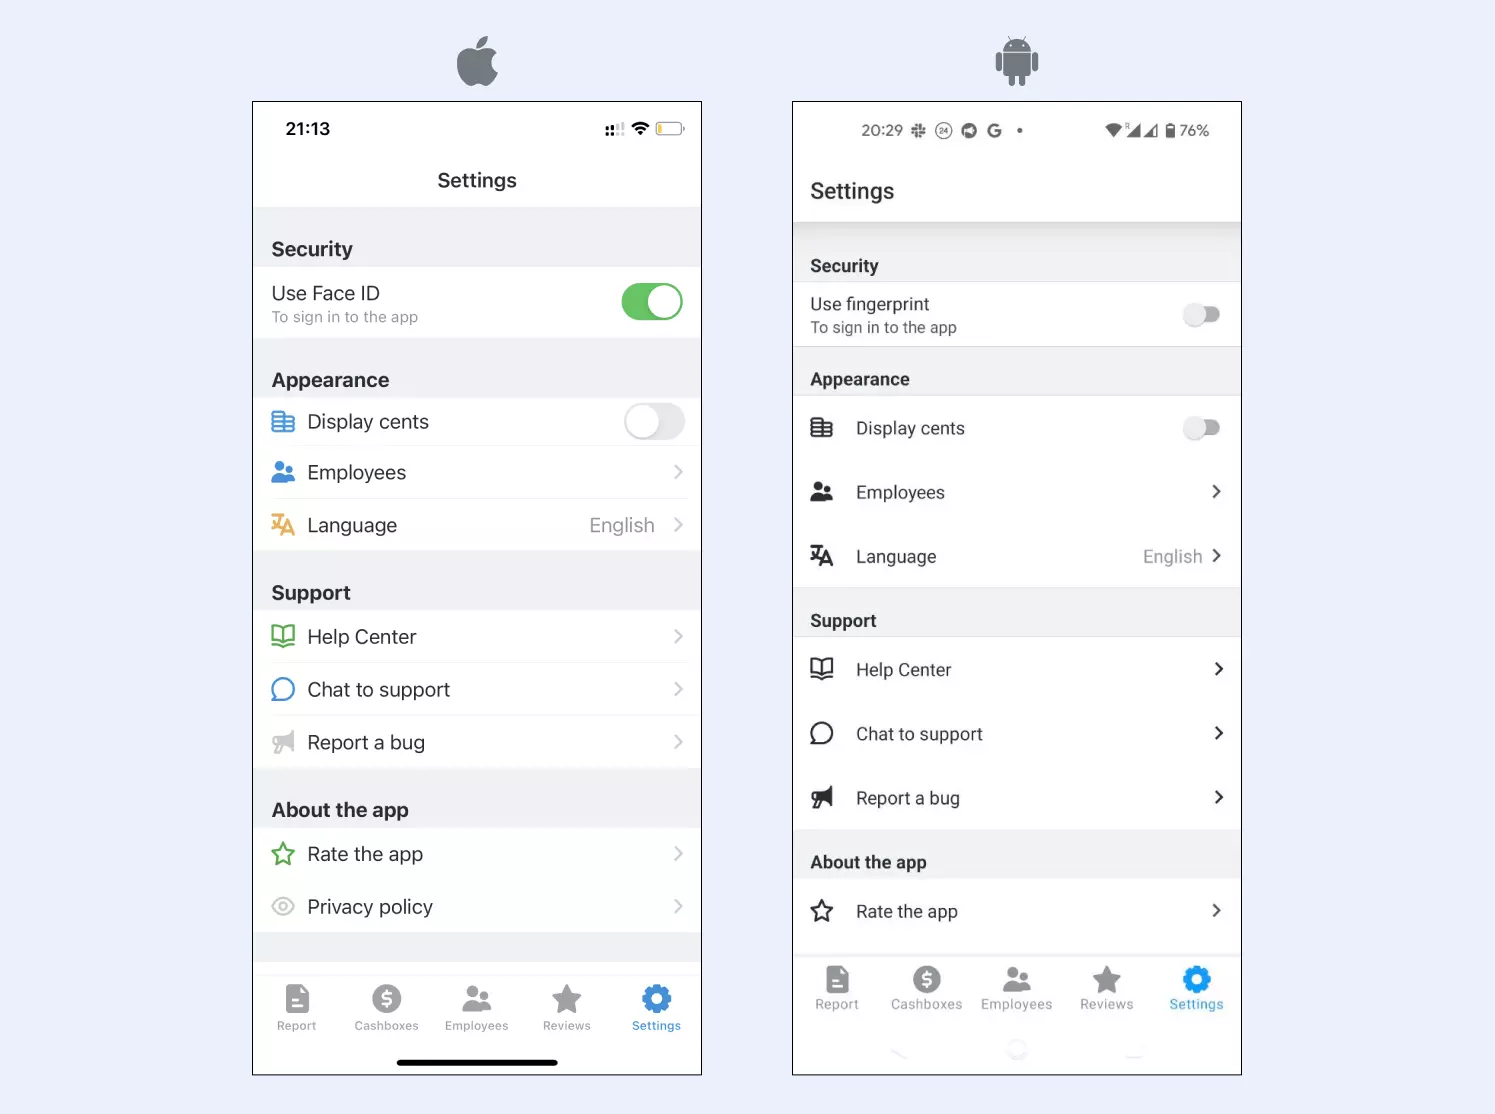 mobile-redesigned-settings-en.webp (33 KB)